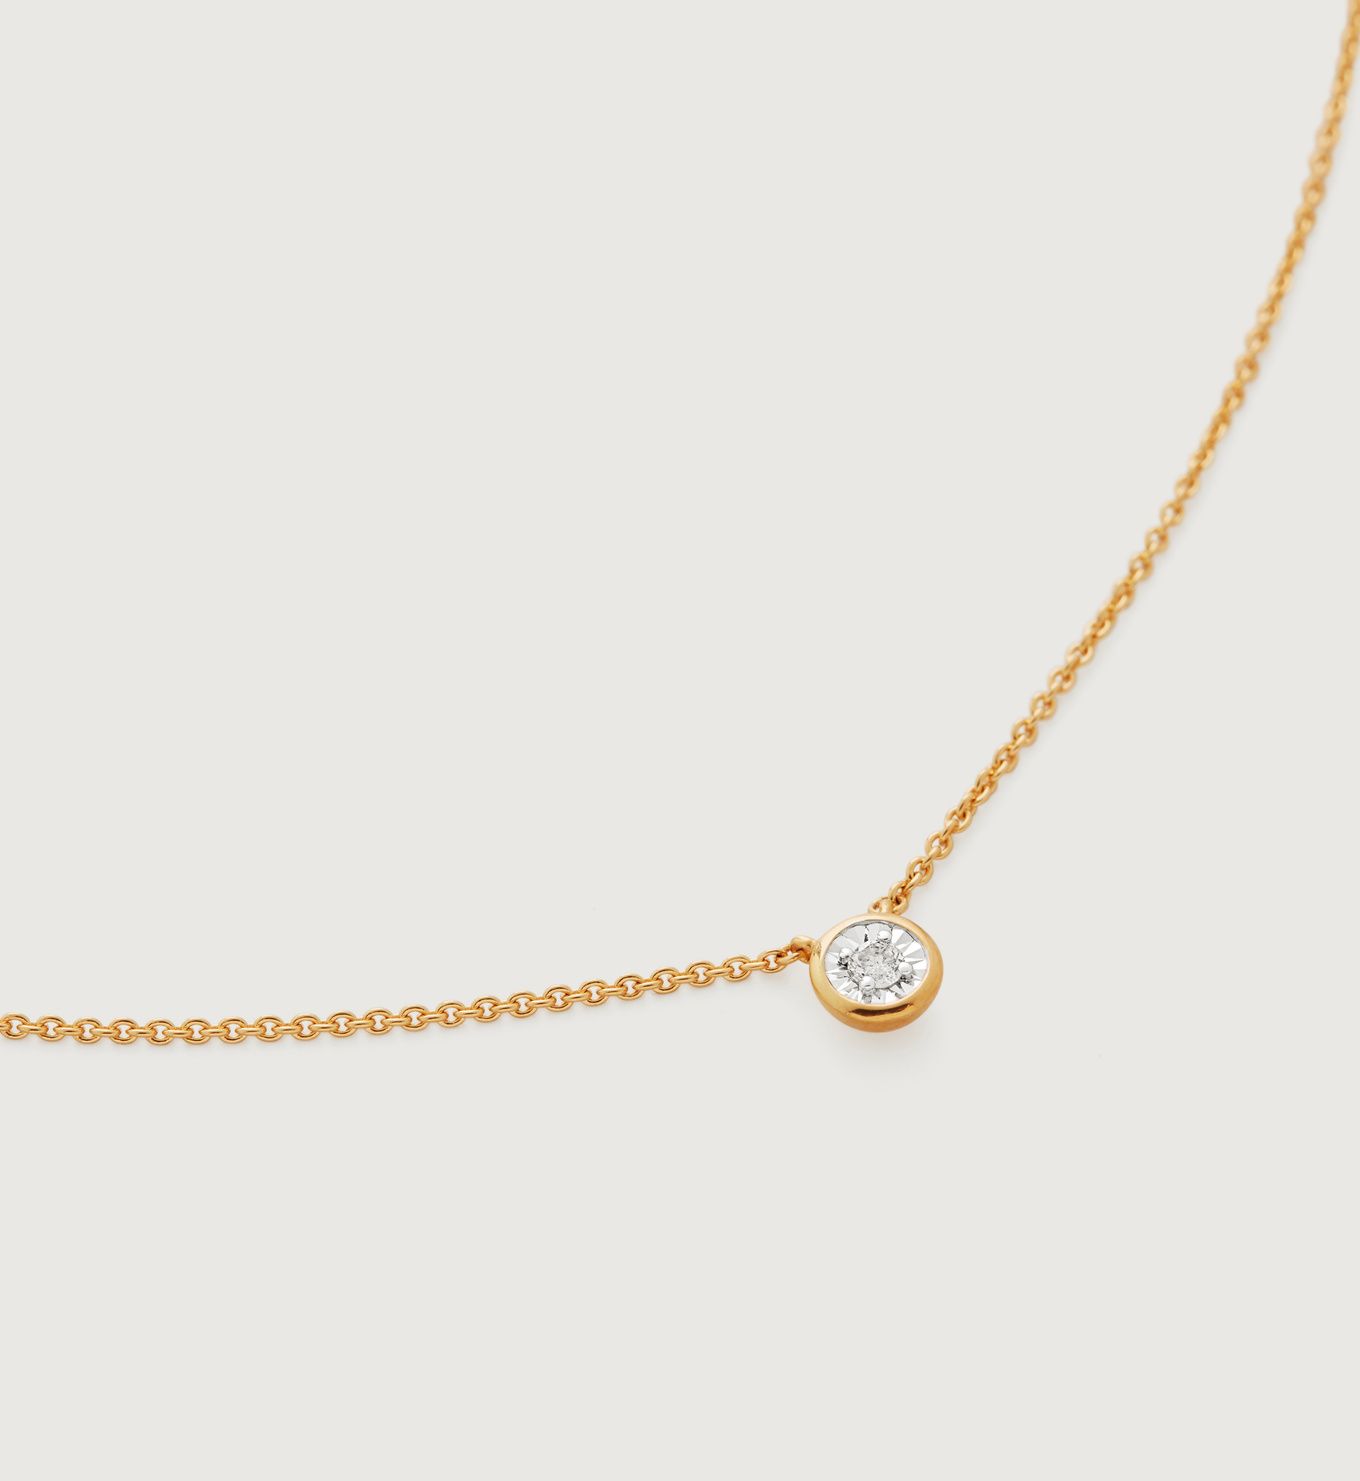 Diamond Essential Necklace Adjustable 41-46cm/16-18" | Monica Vinader (Global)